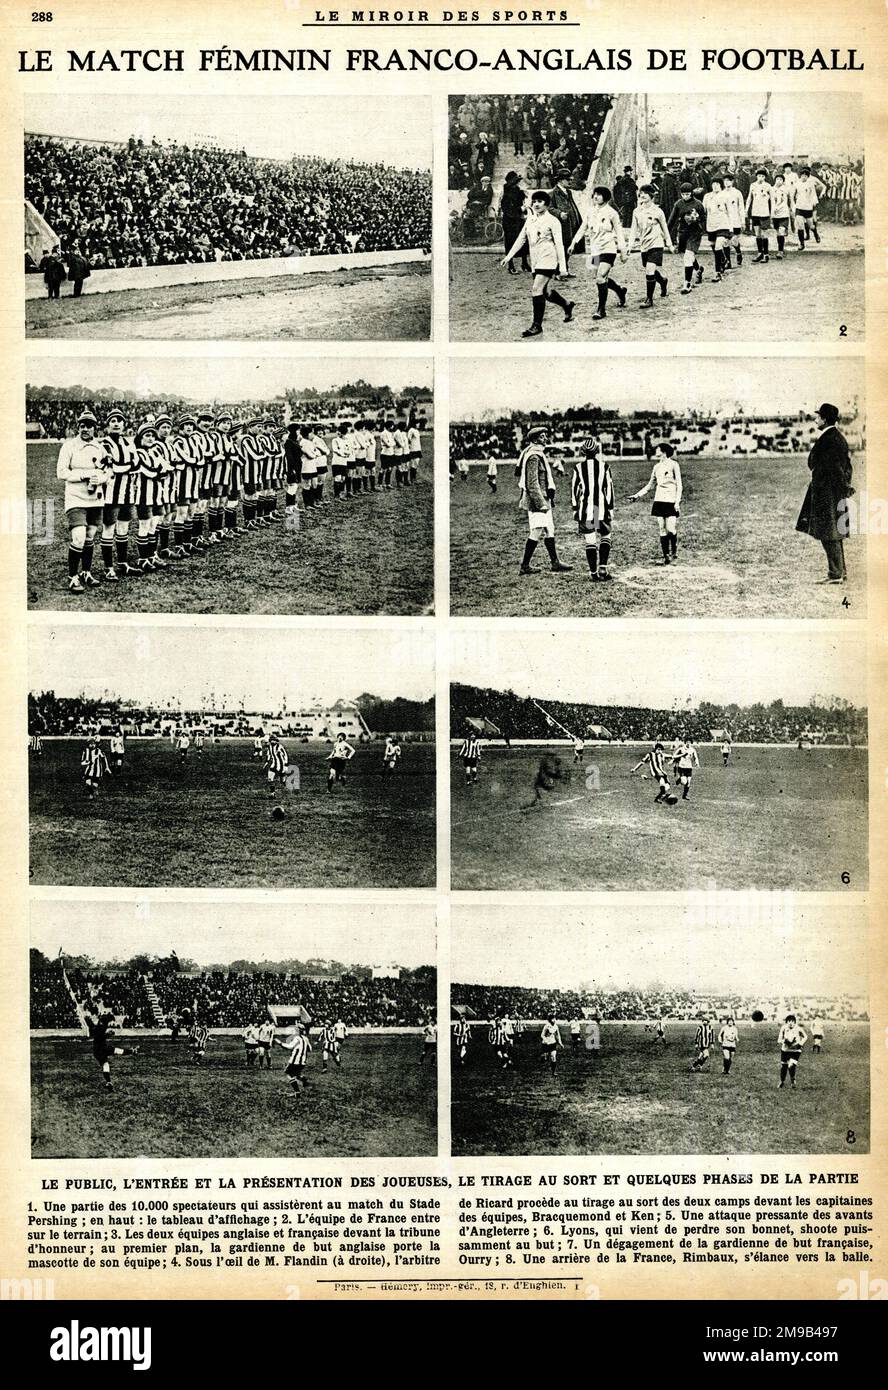 Internationales Frauenfußballspiel, Frankreich gegen England, November 1920 Stockfoto